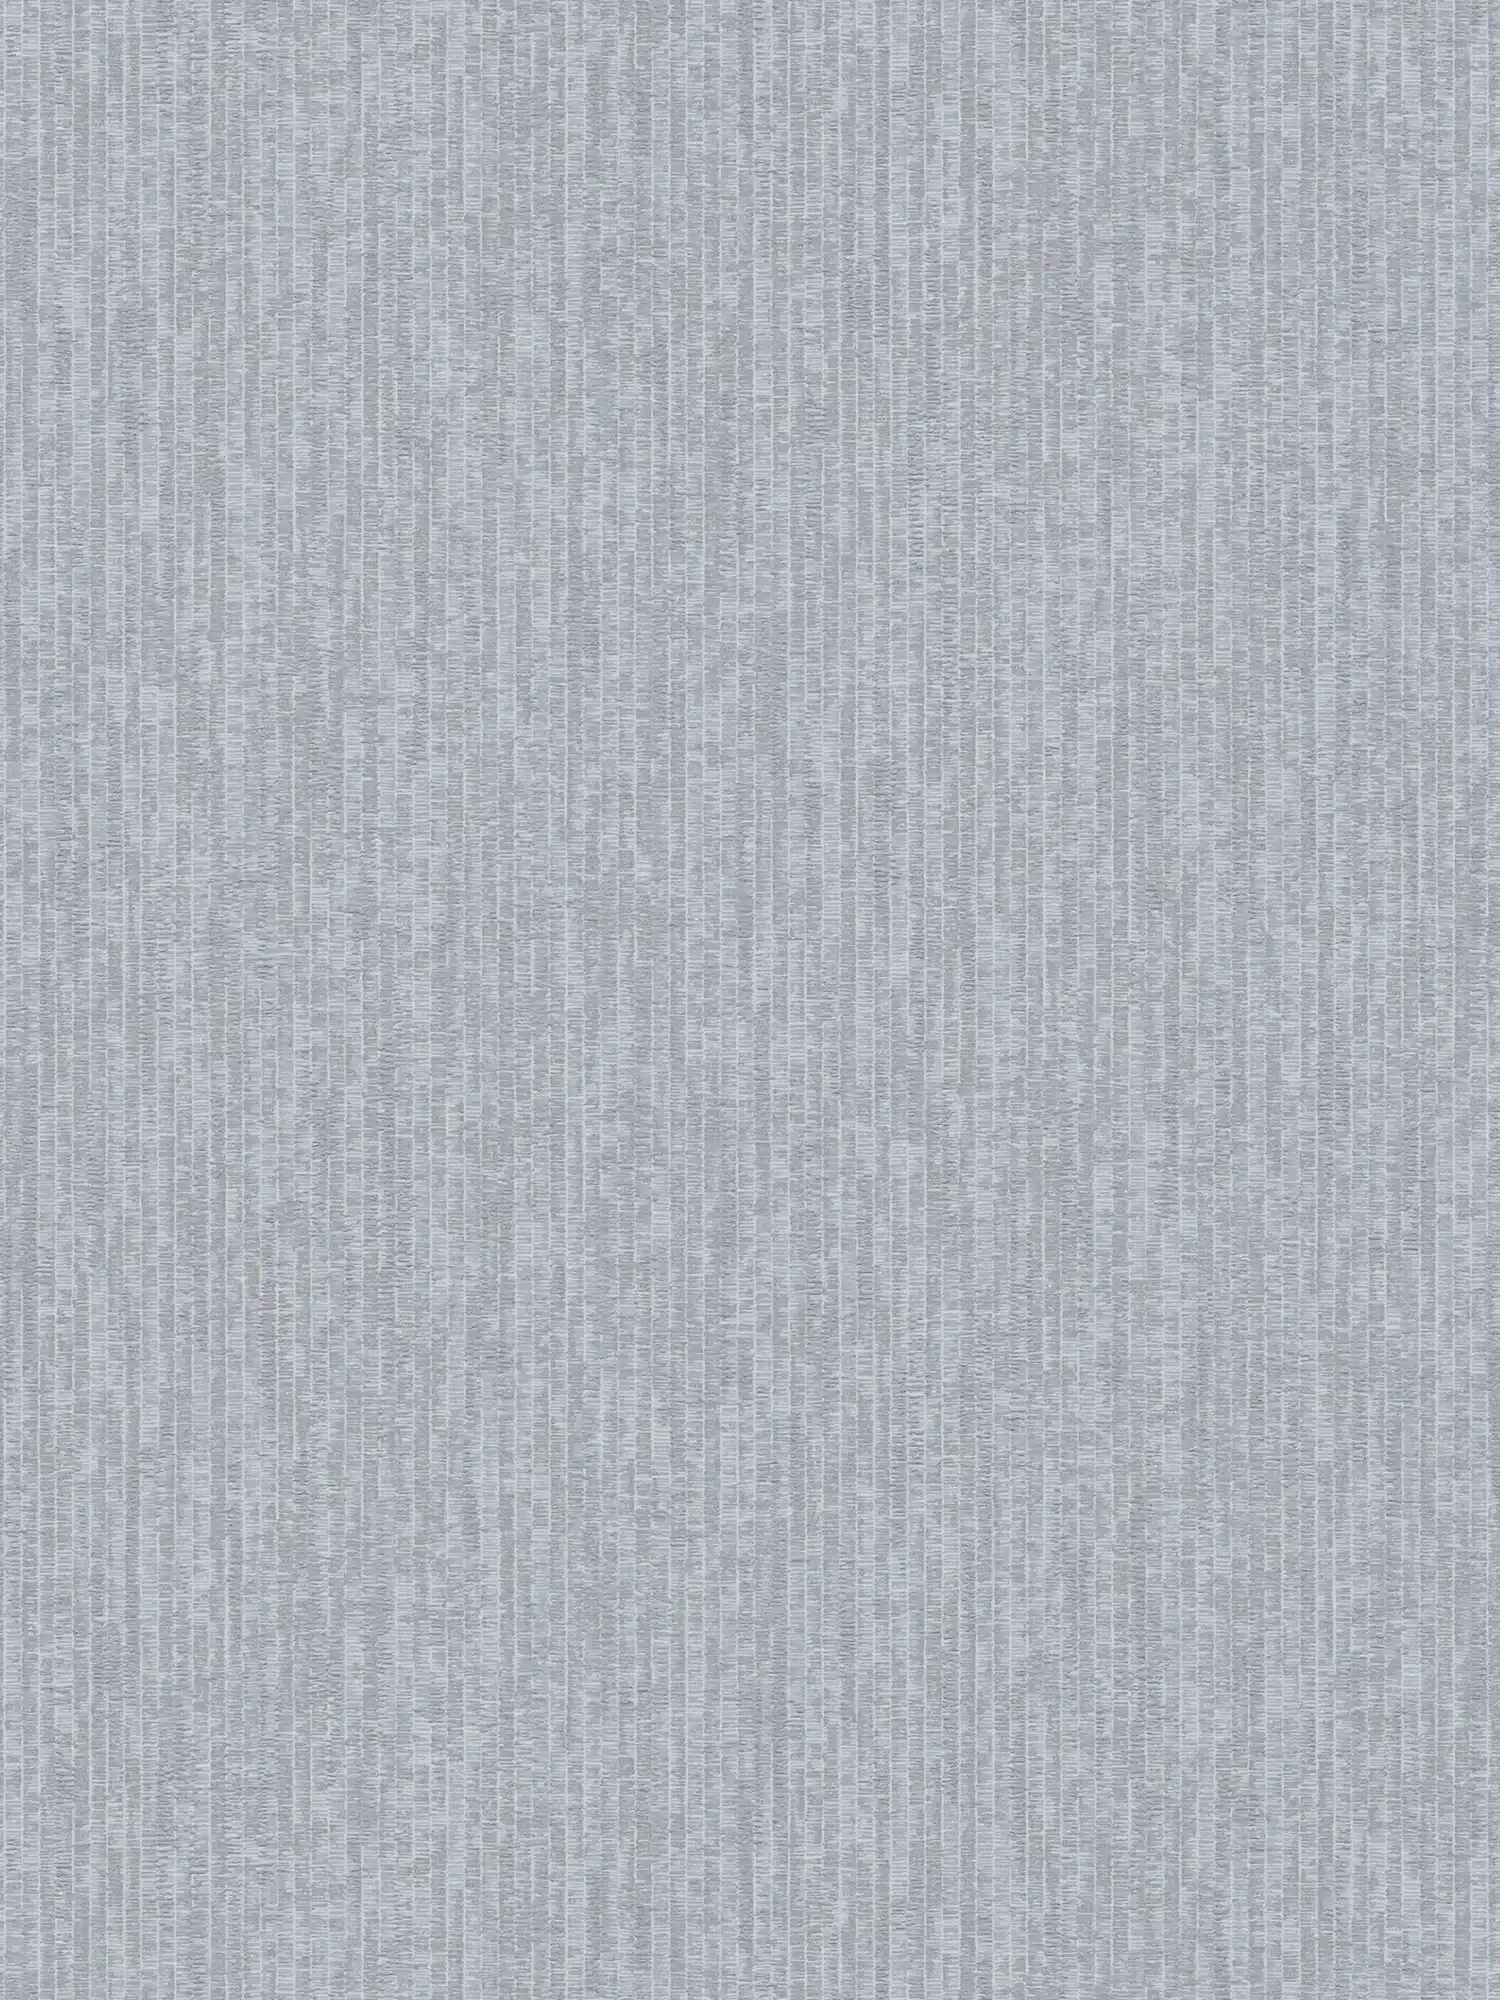 Papier peint bleu chiné aspect tissé métallique - bleu, gris
